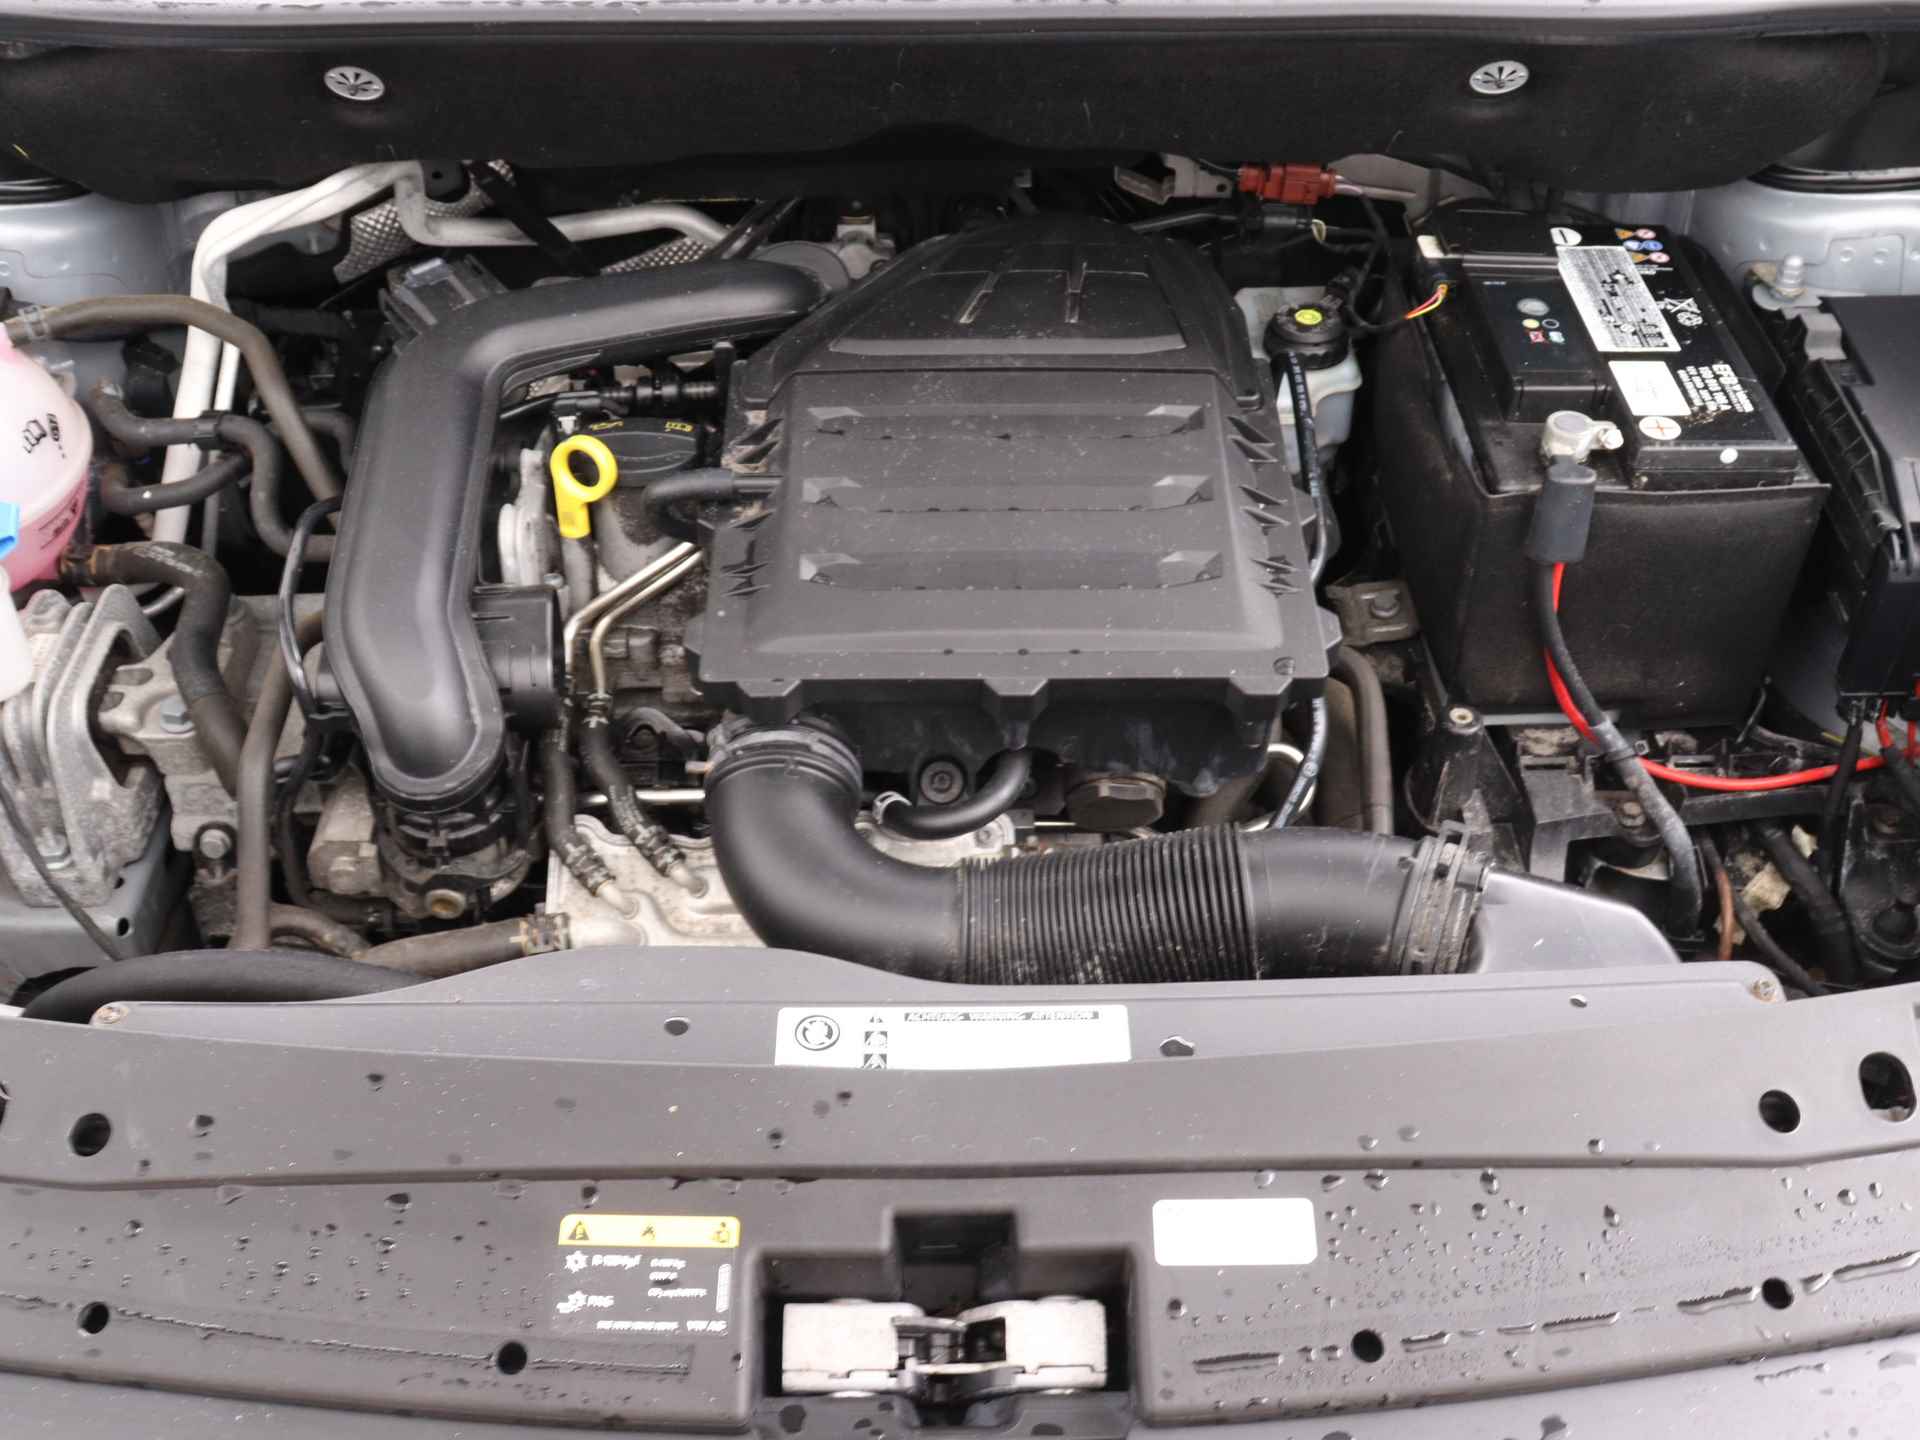 Volkswagen Caddy Maxi 1.0 TSI Trendline 5p Ingepland voor nieuwe bodemverlaging t.b.v. rolstoelvervoer (Prijs incl. bodemverlaging) - 35/36